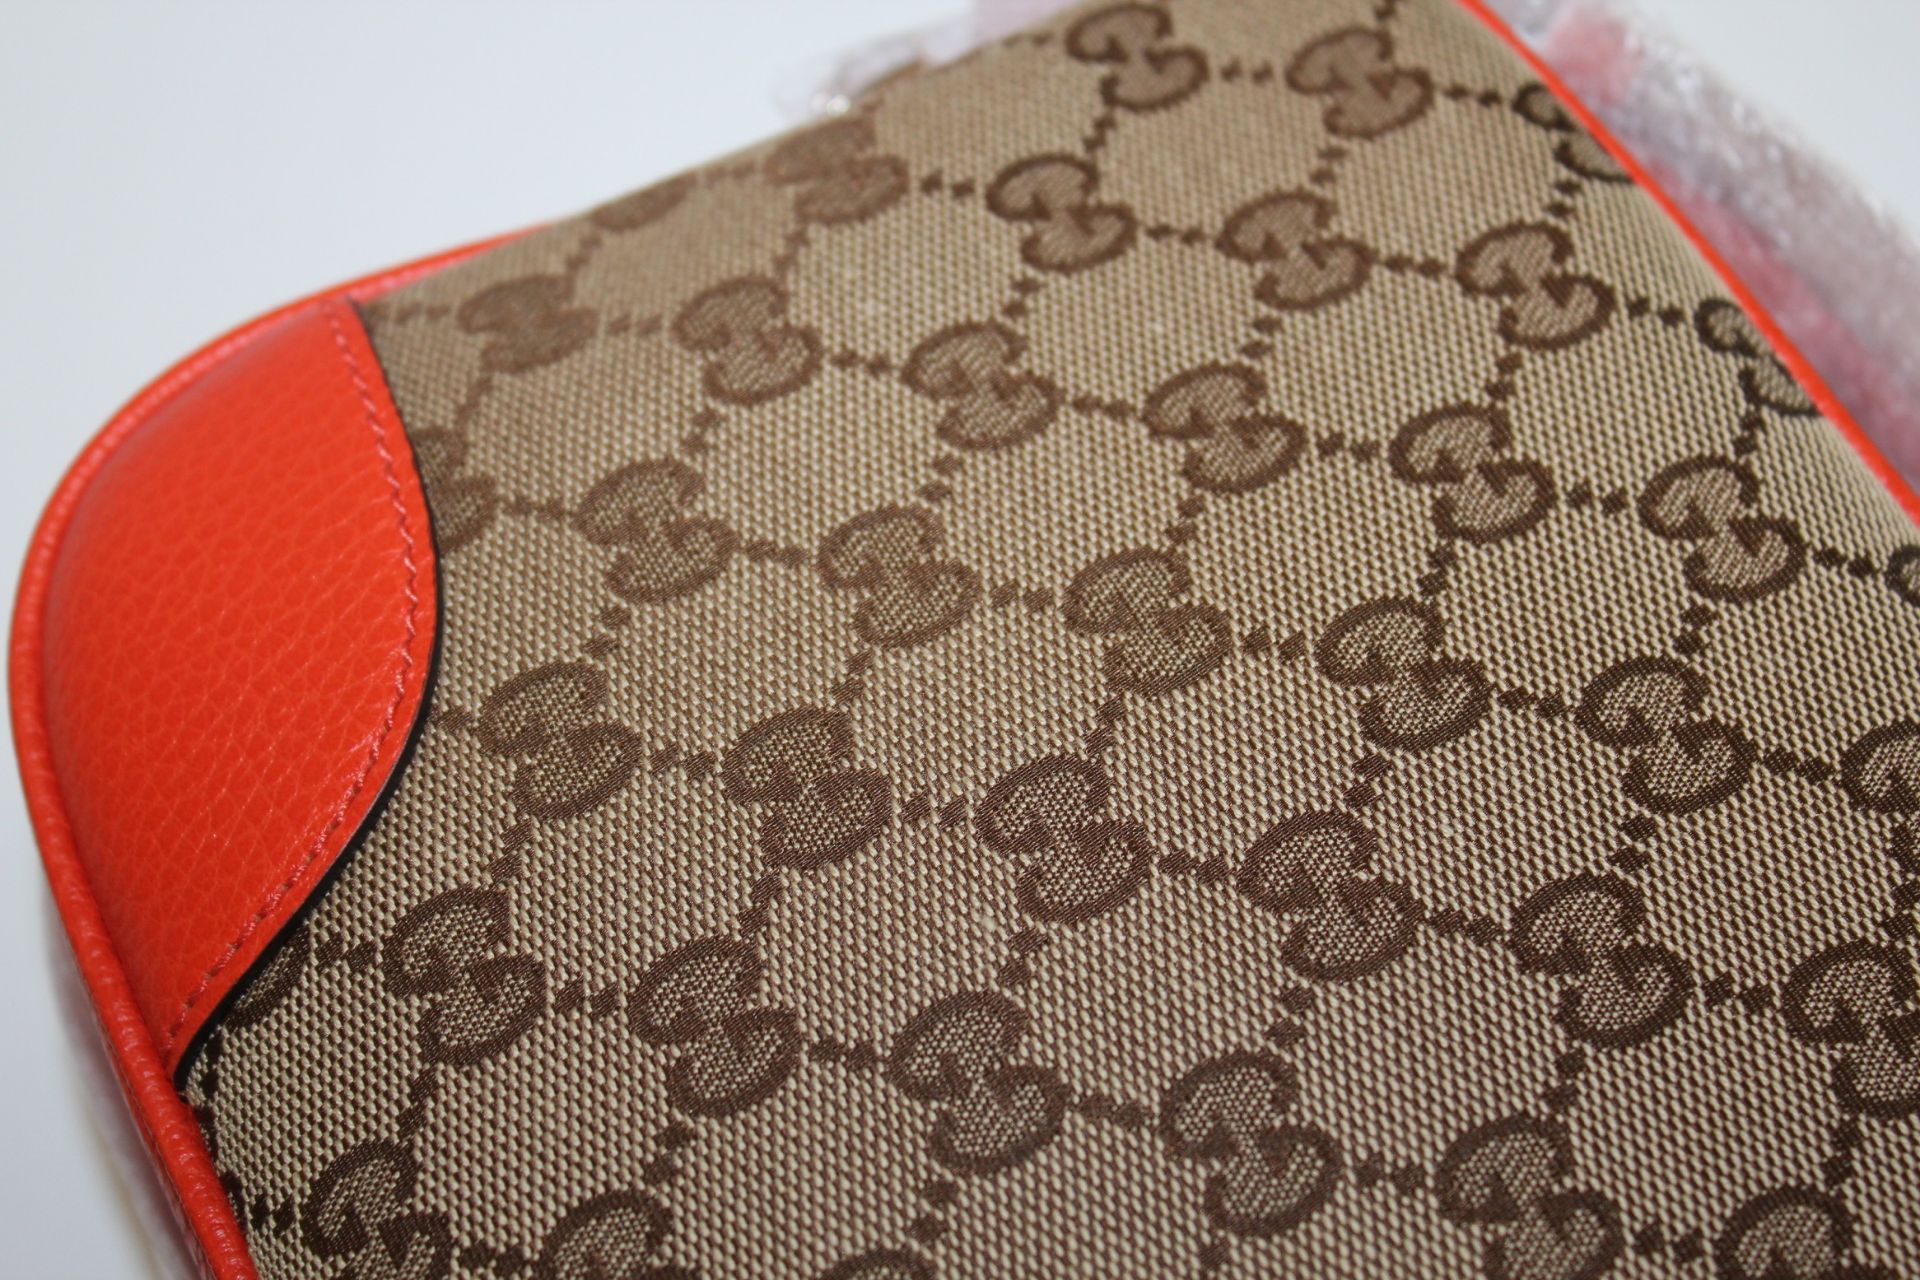 Gucci Canvas Leather GG Guccissima Small Bree Crossbody Bag _ (Beige/Orange) - Image 5 of 5